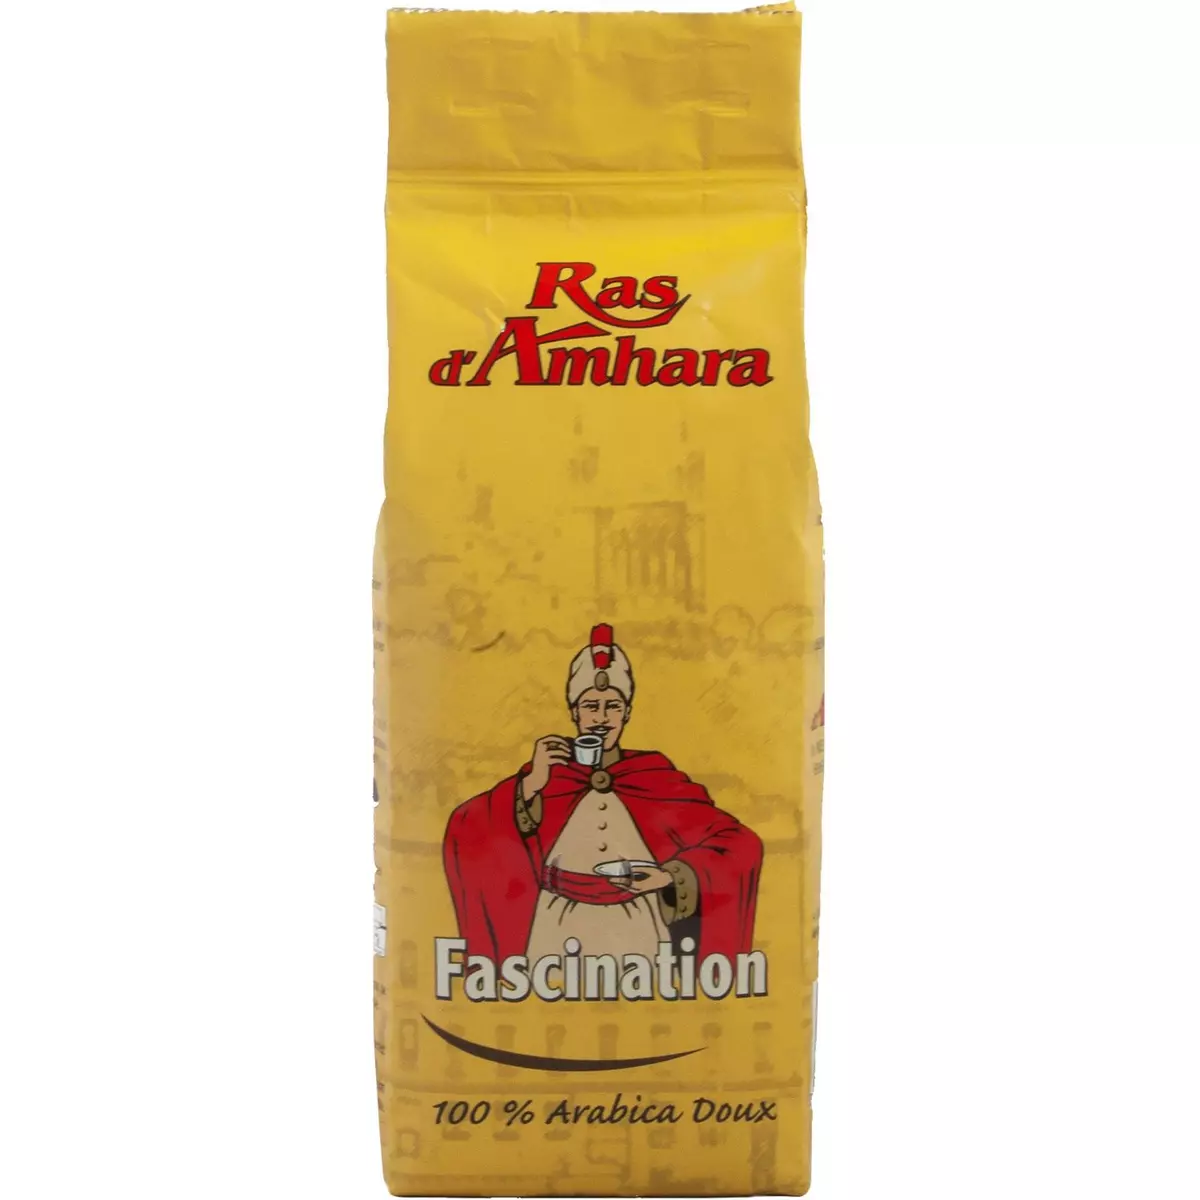 RAS D'AMHARA Café moulu Fascination pur arabica doux 250g